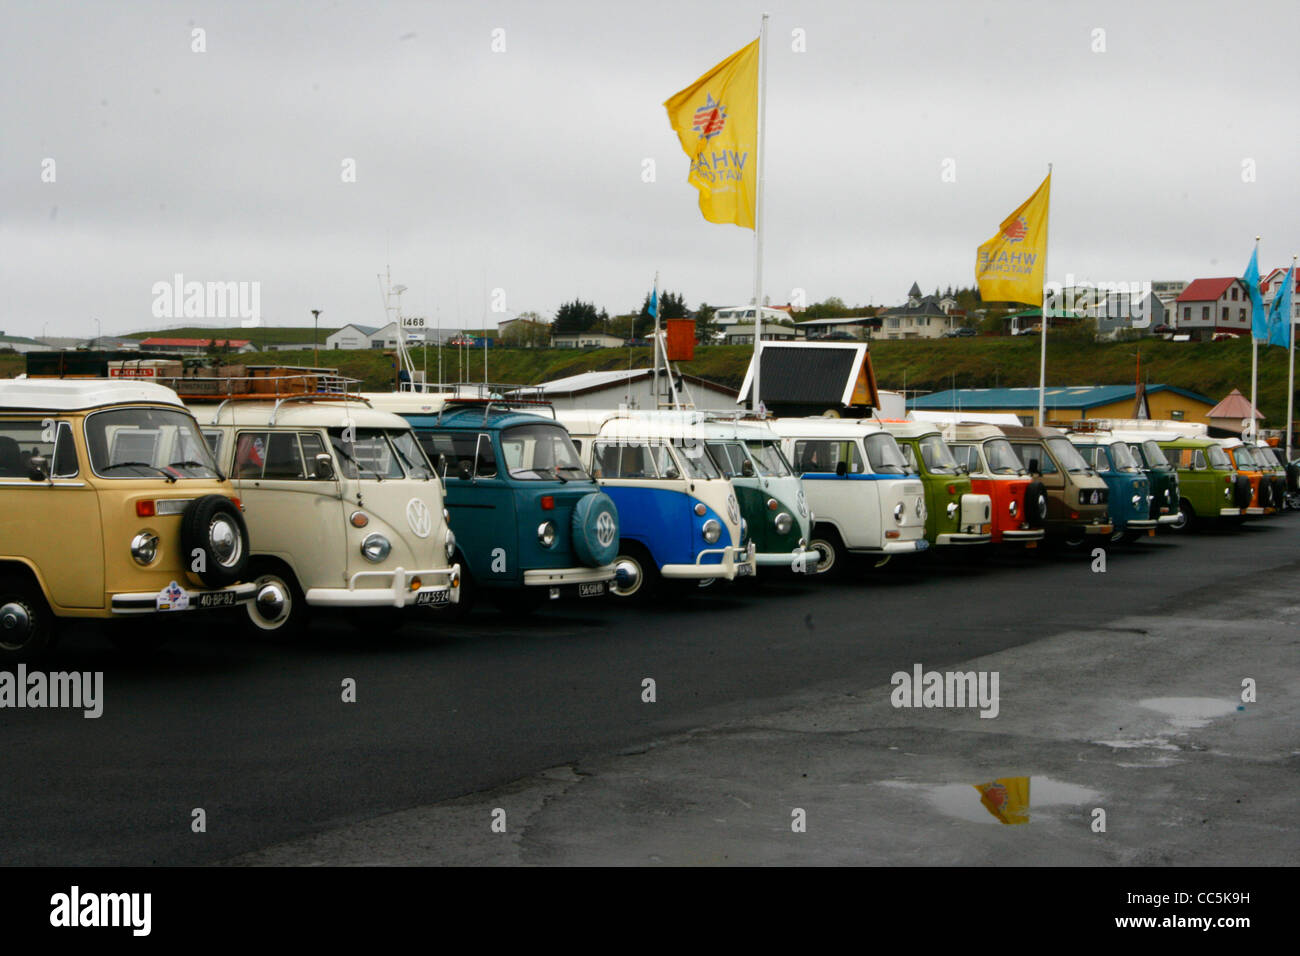 350+ Volkswagen Van Pictures [HD]